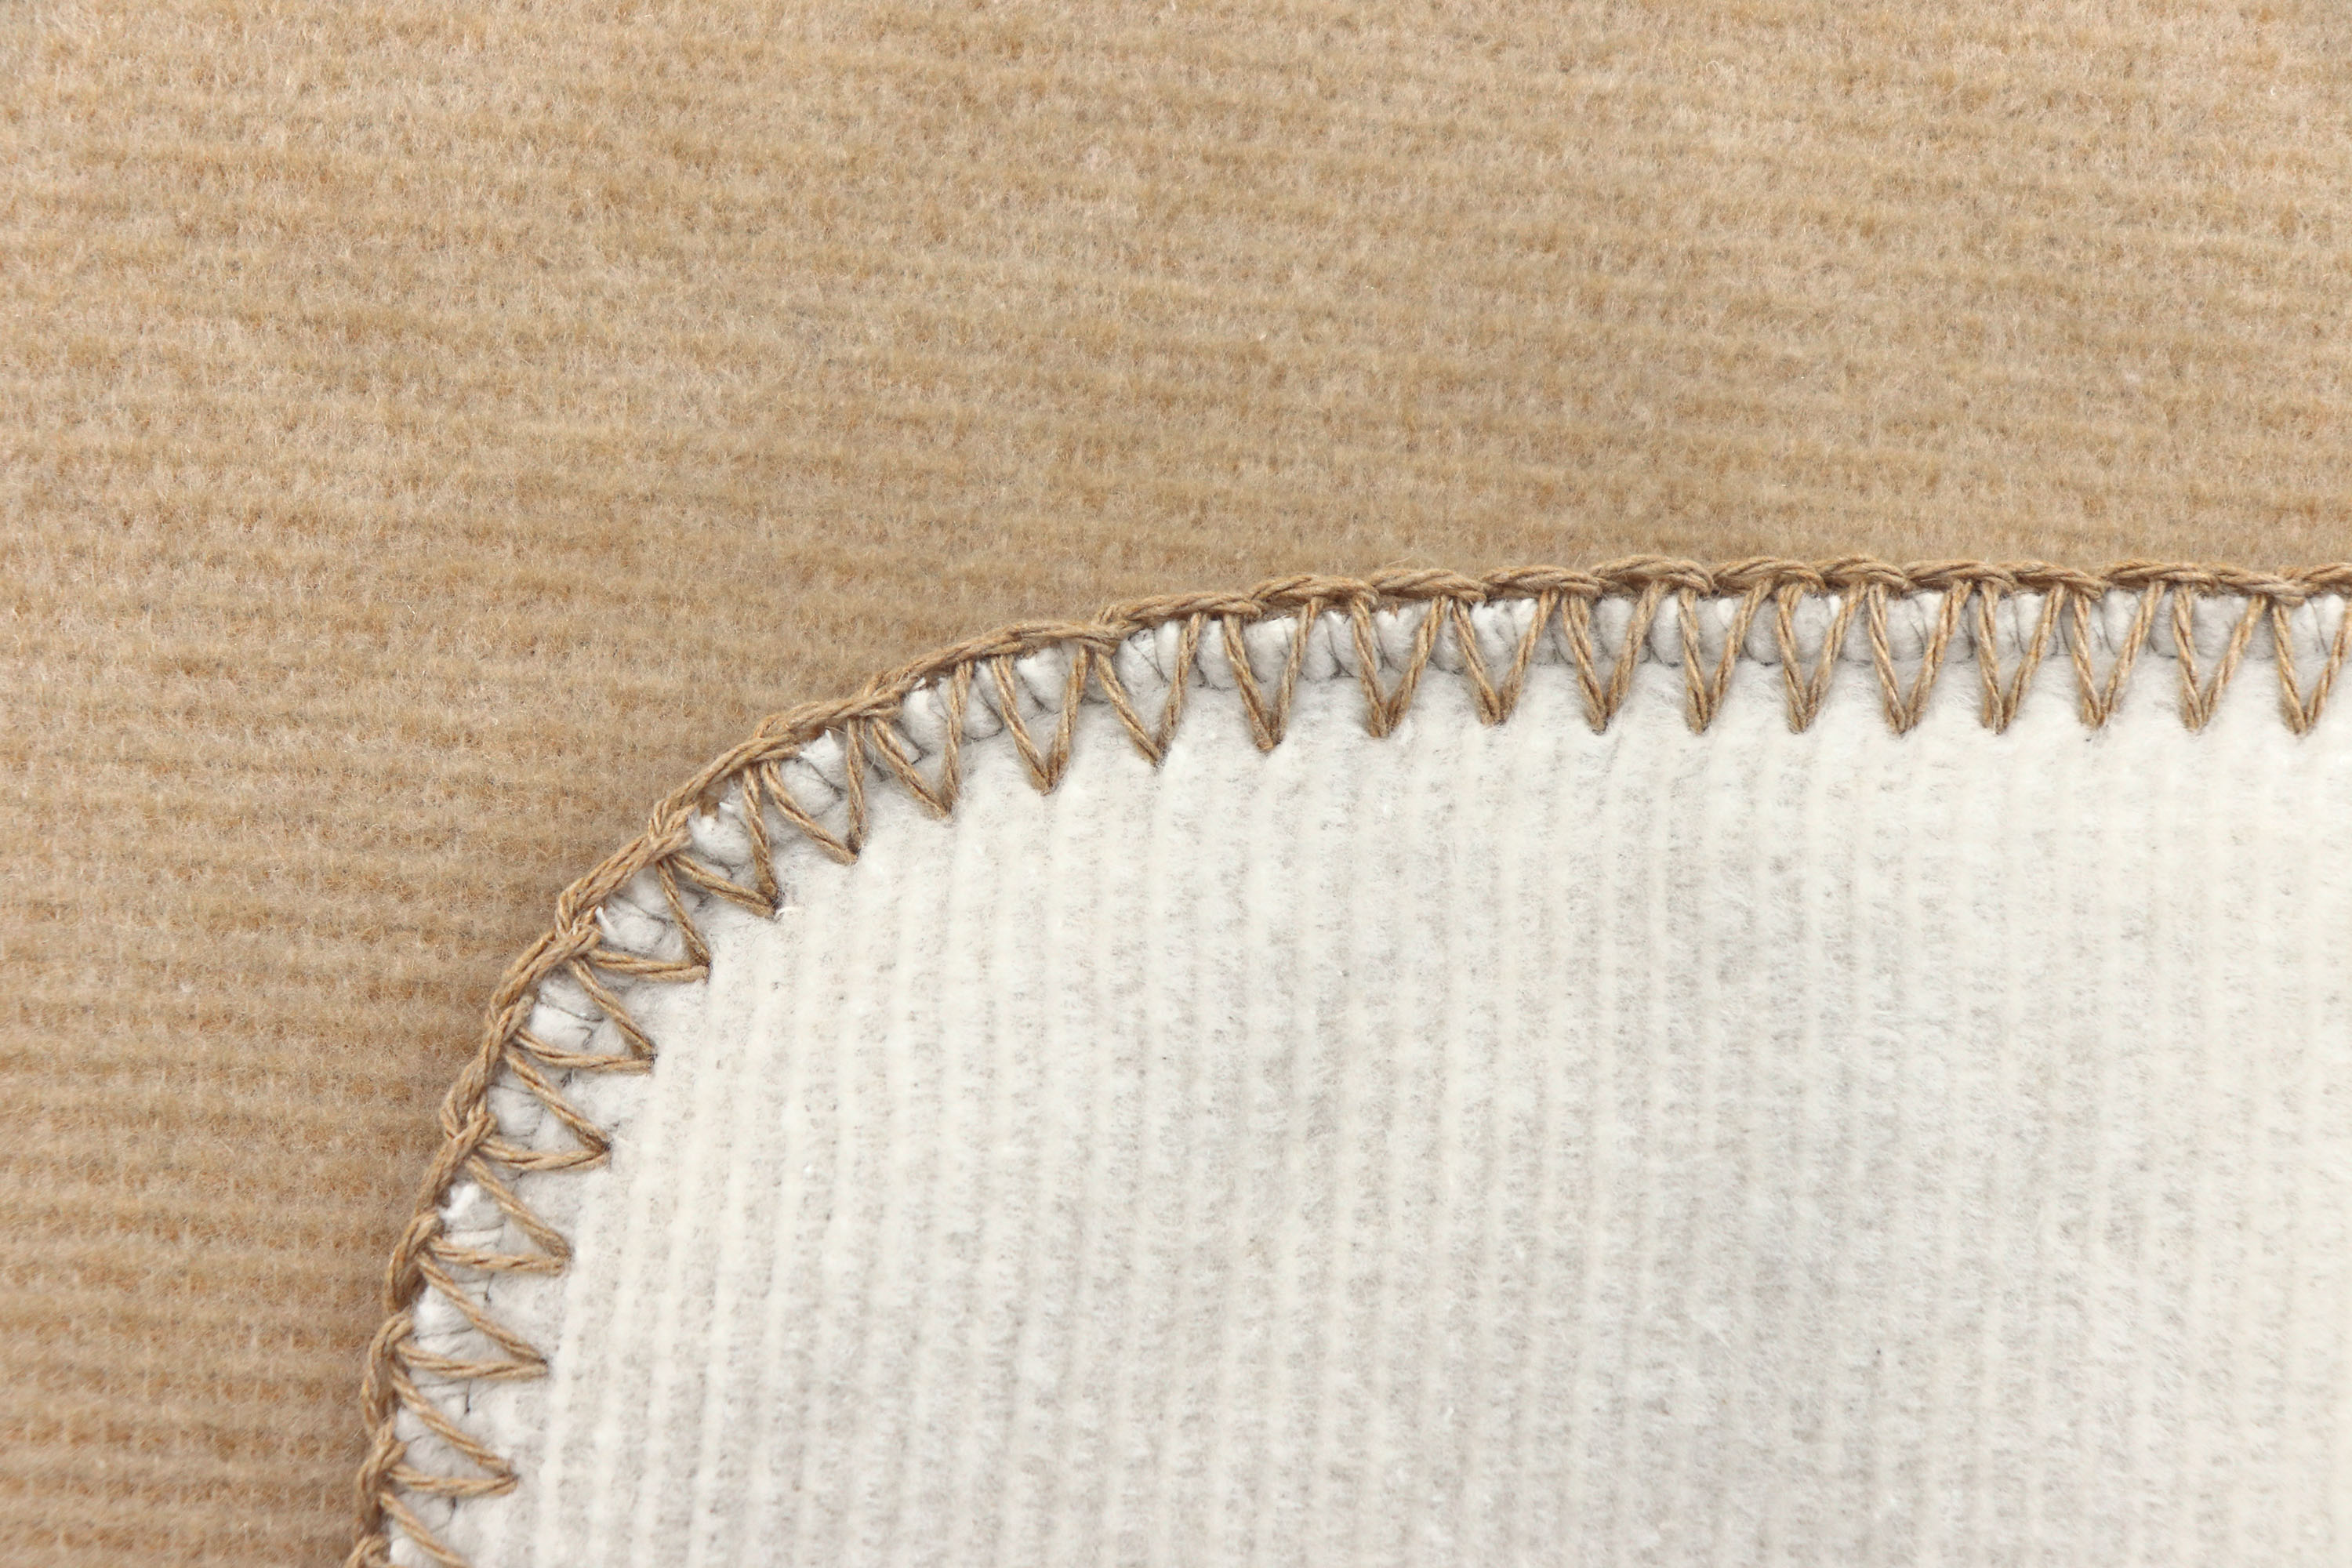 Wohndecke "Melange Doubleface" aus Baumwollmischgewebe in 150x200 cm in Creme-Natur - Zierstich